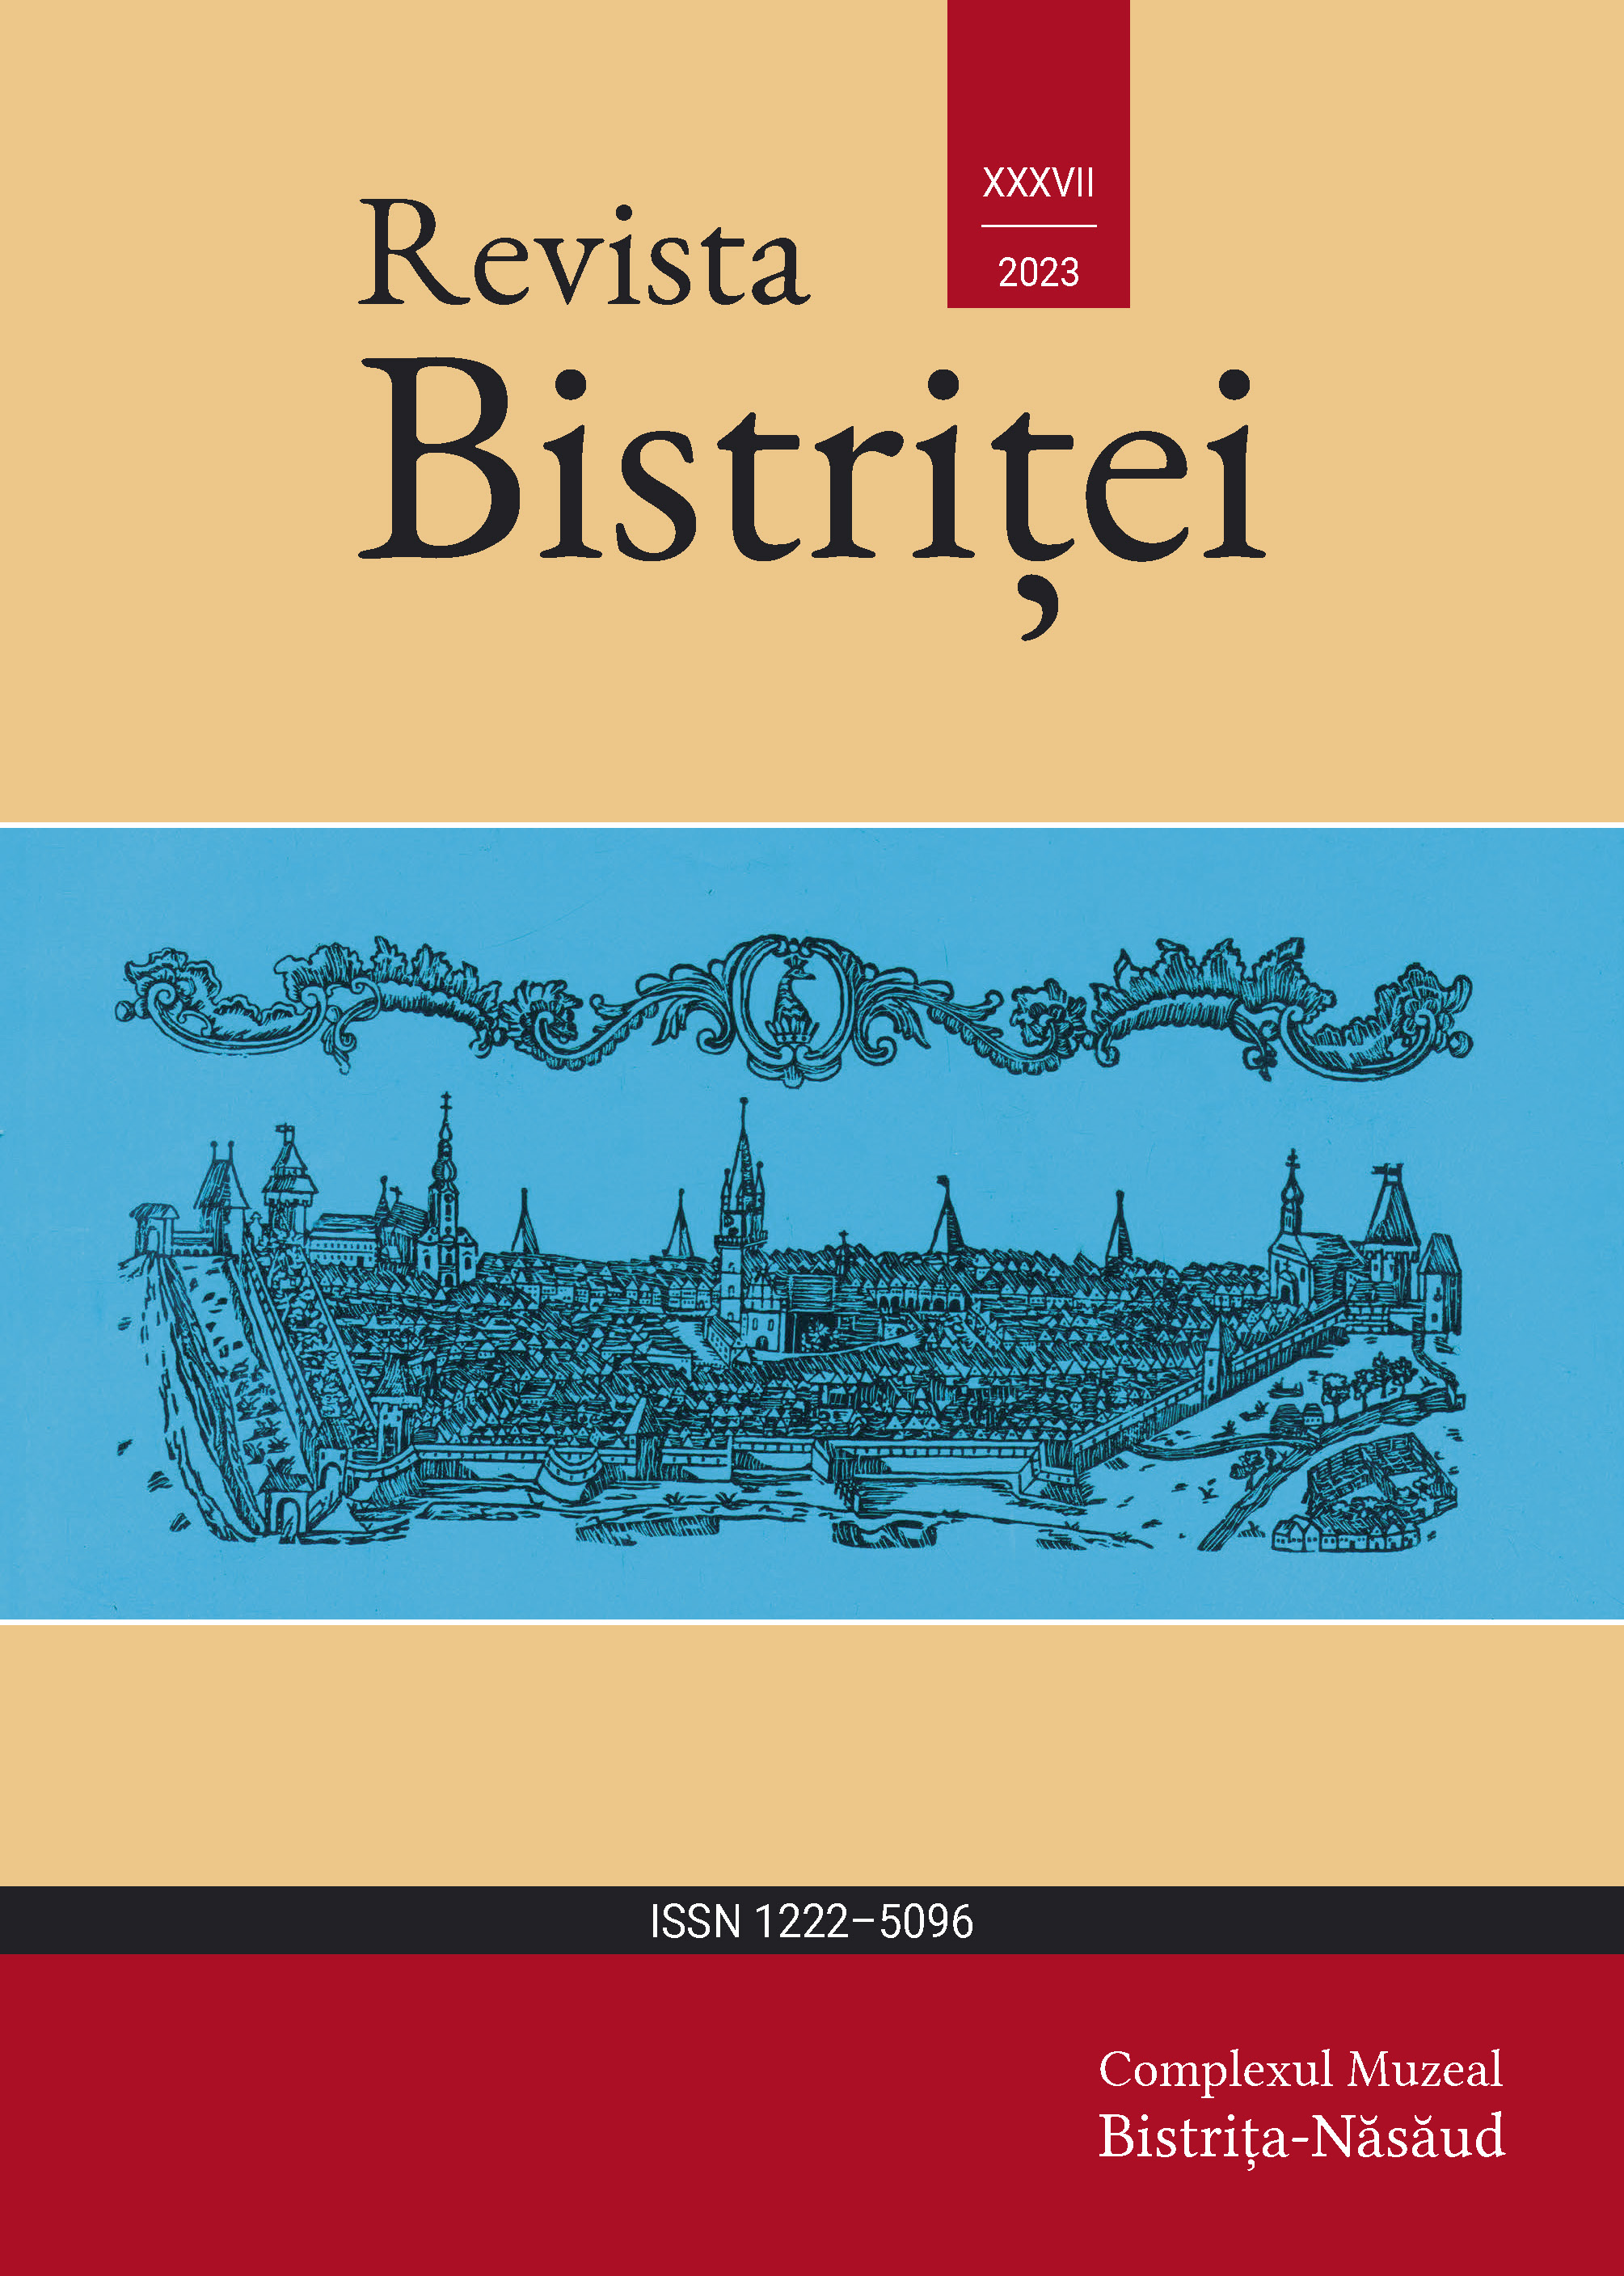 Struțul cu potcoavă în cioc în sigiliile medievale ale orașului Bistrița: originile unui simbol heraldic